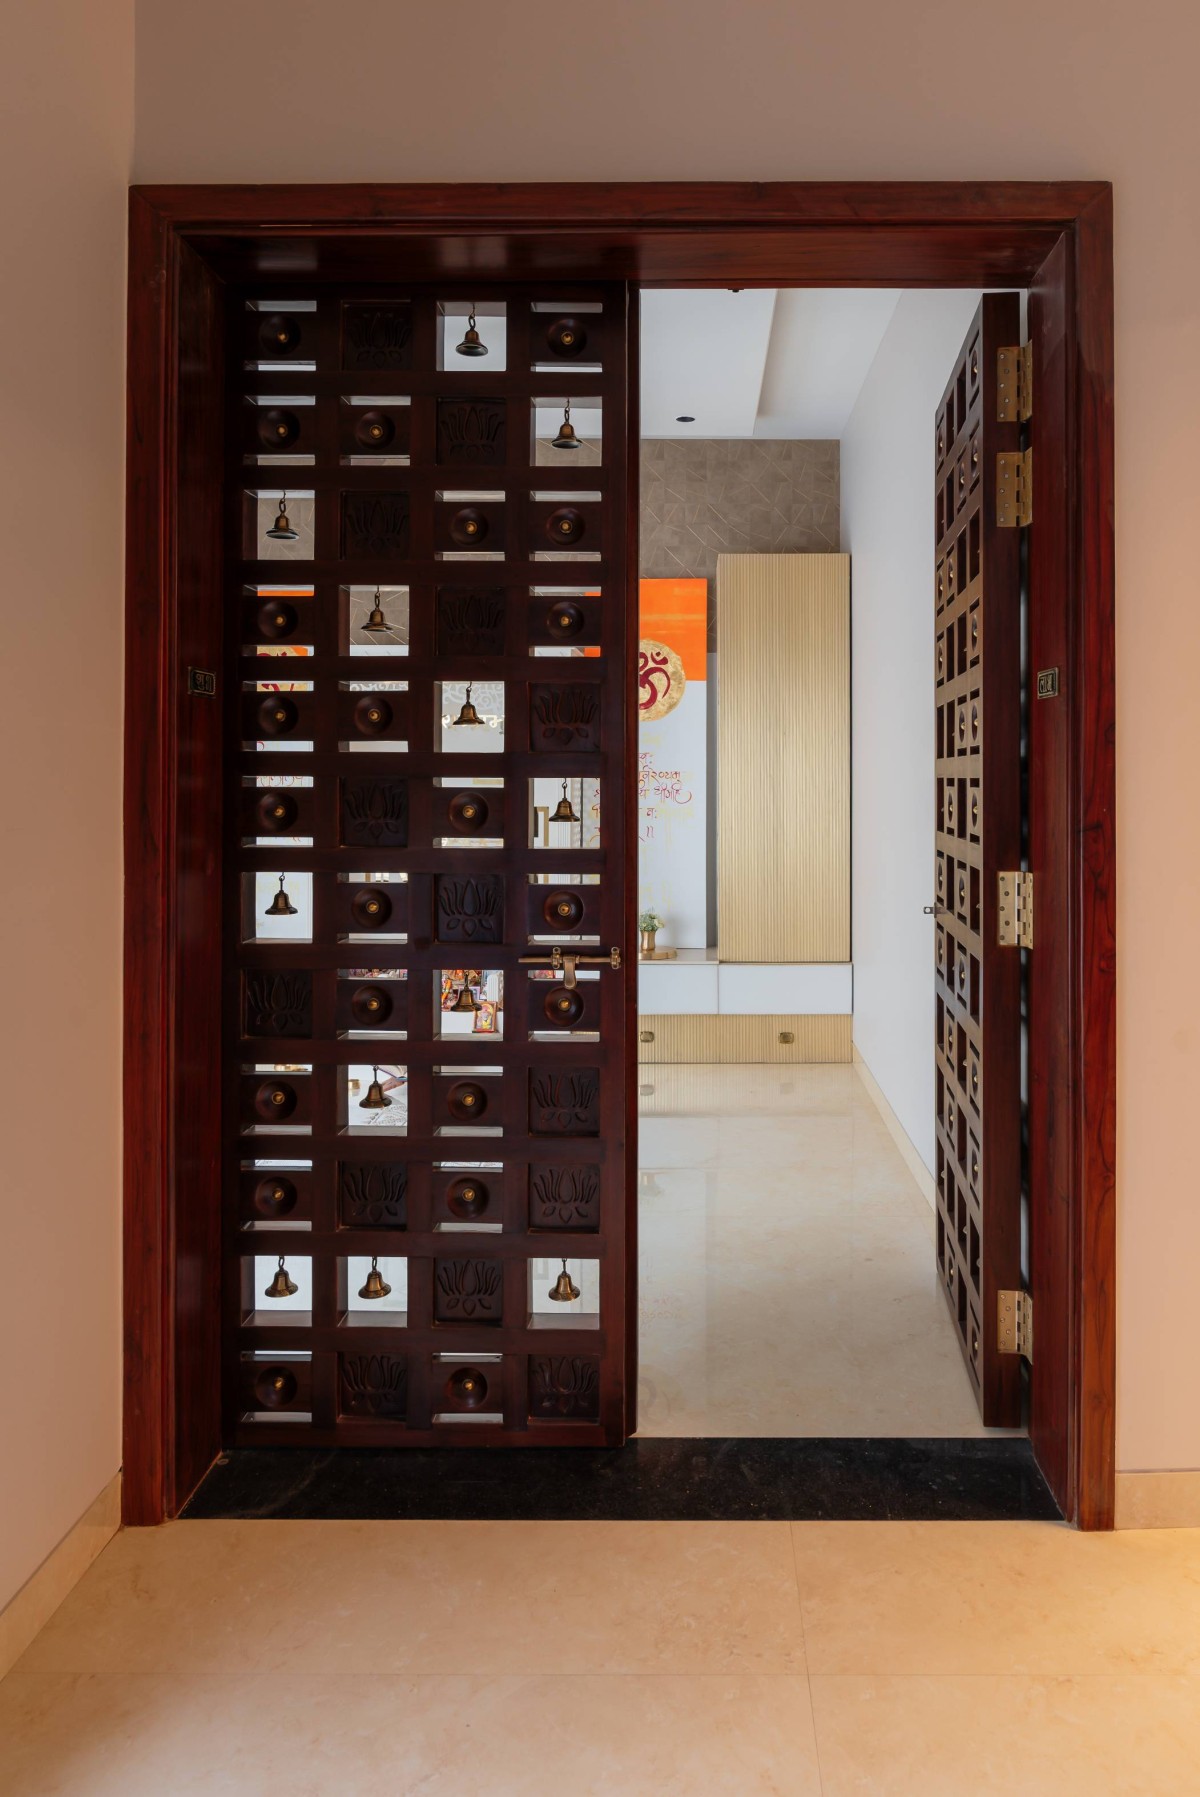 Pooja room of Villa 46 by Hem & Associates